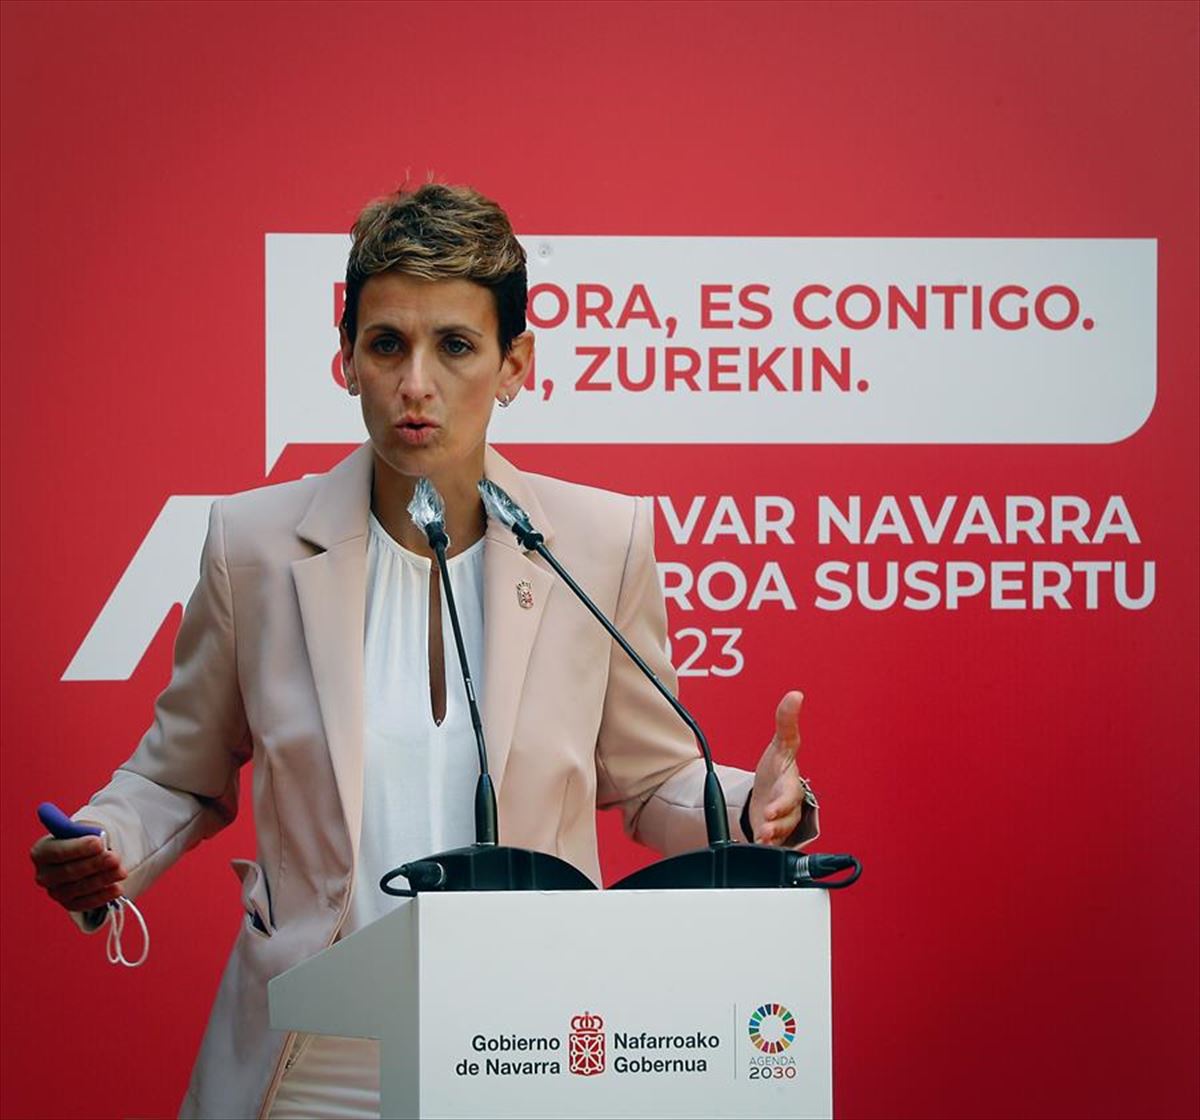 Maria Chivite Nafarroako presidentea. Argazkia: EFE